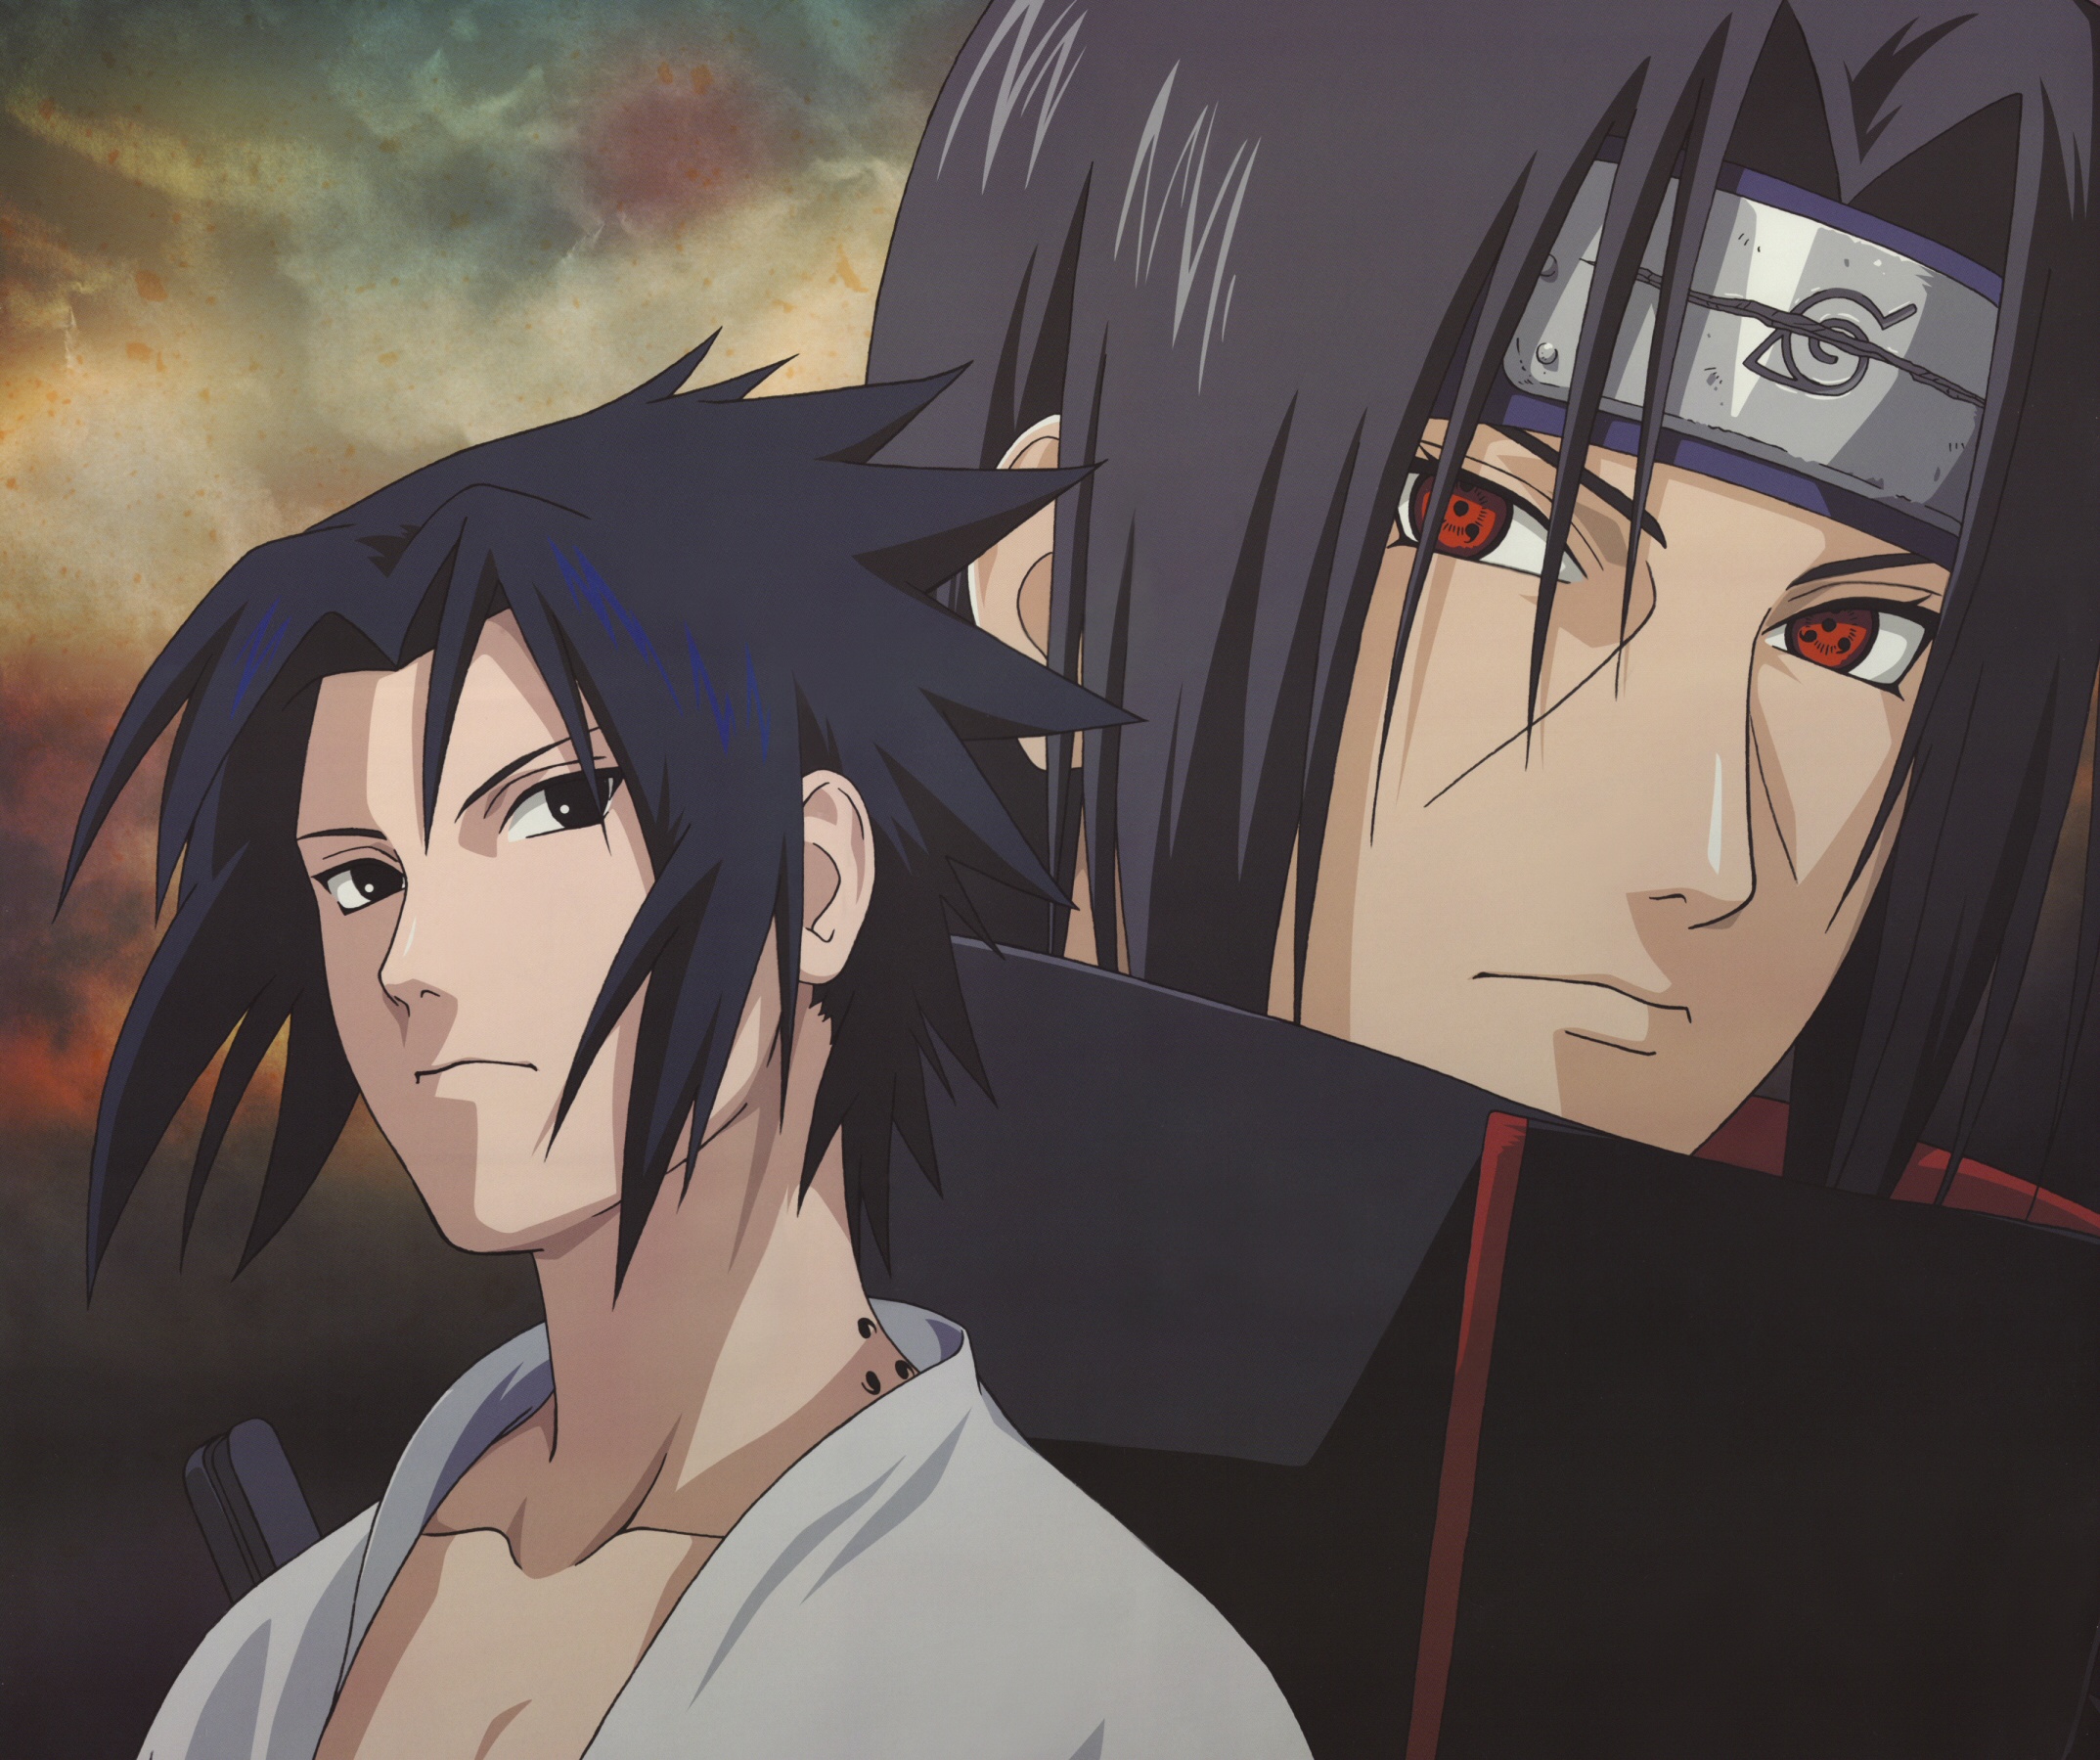 Anime 2147x1799 Naruto (anime) Akatsuki Naruto Shippuden Uchiha Sasuke Uchiha Itachi Uchiha clan